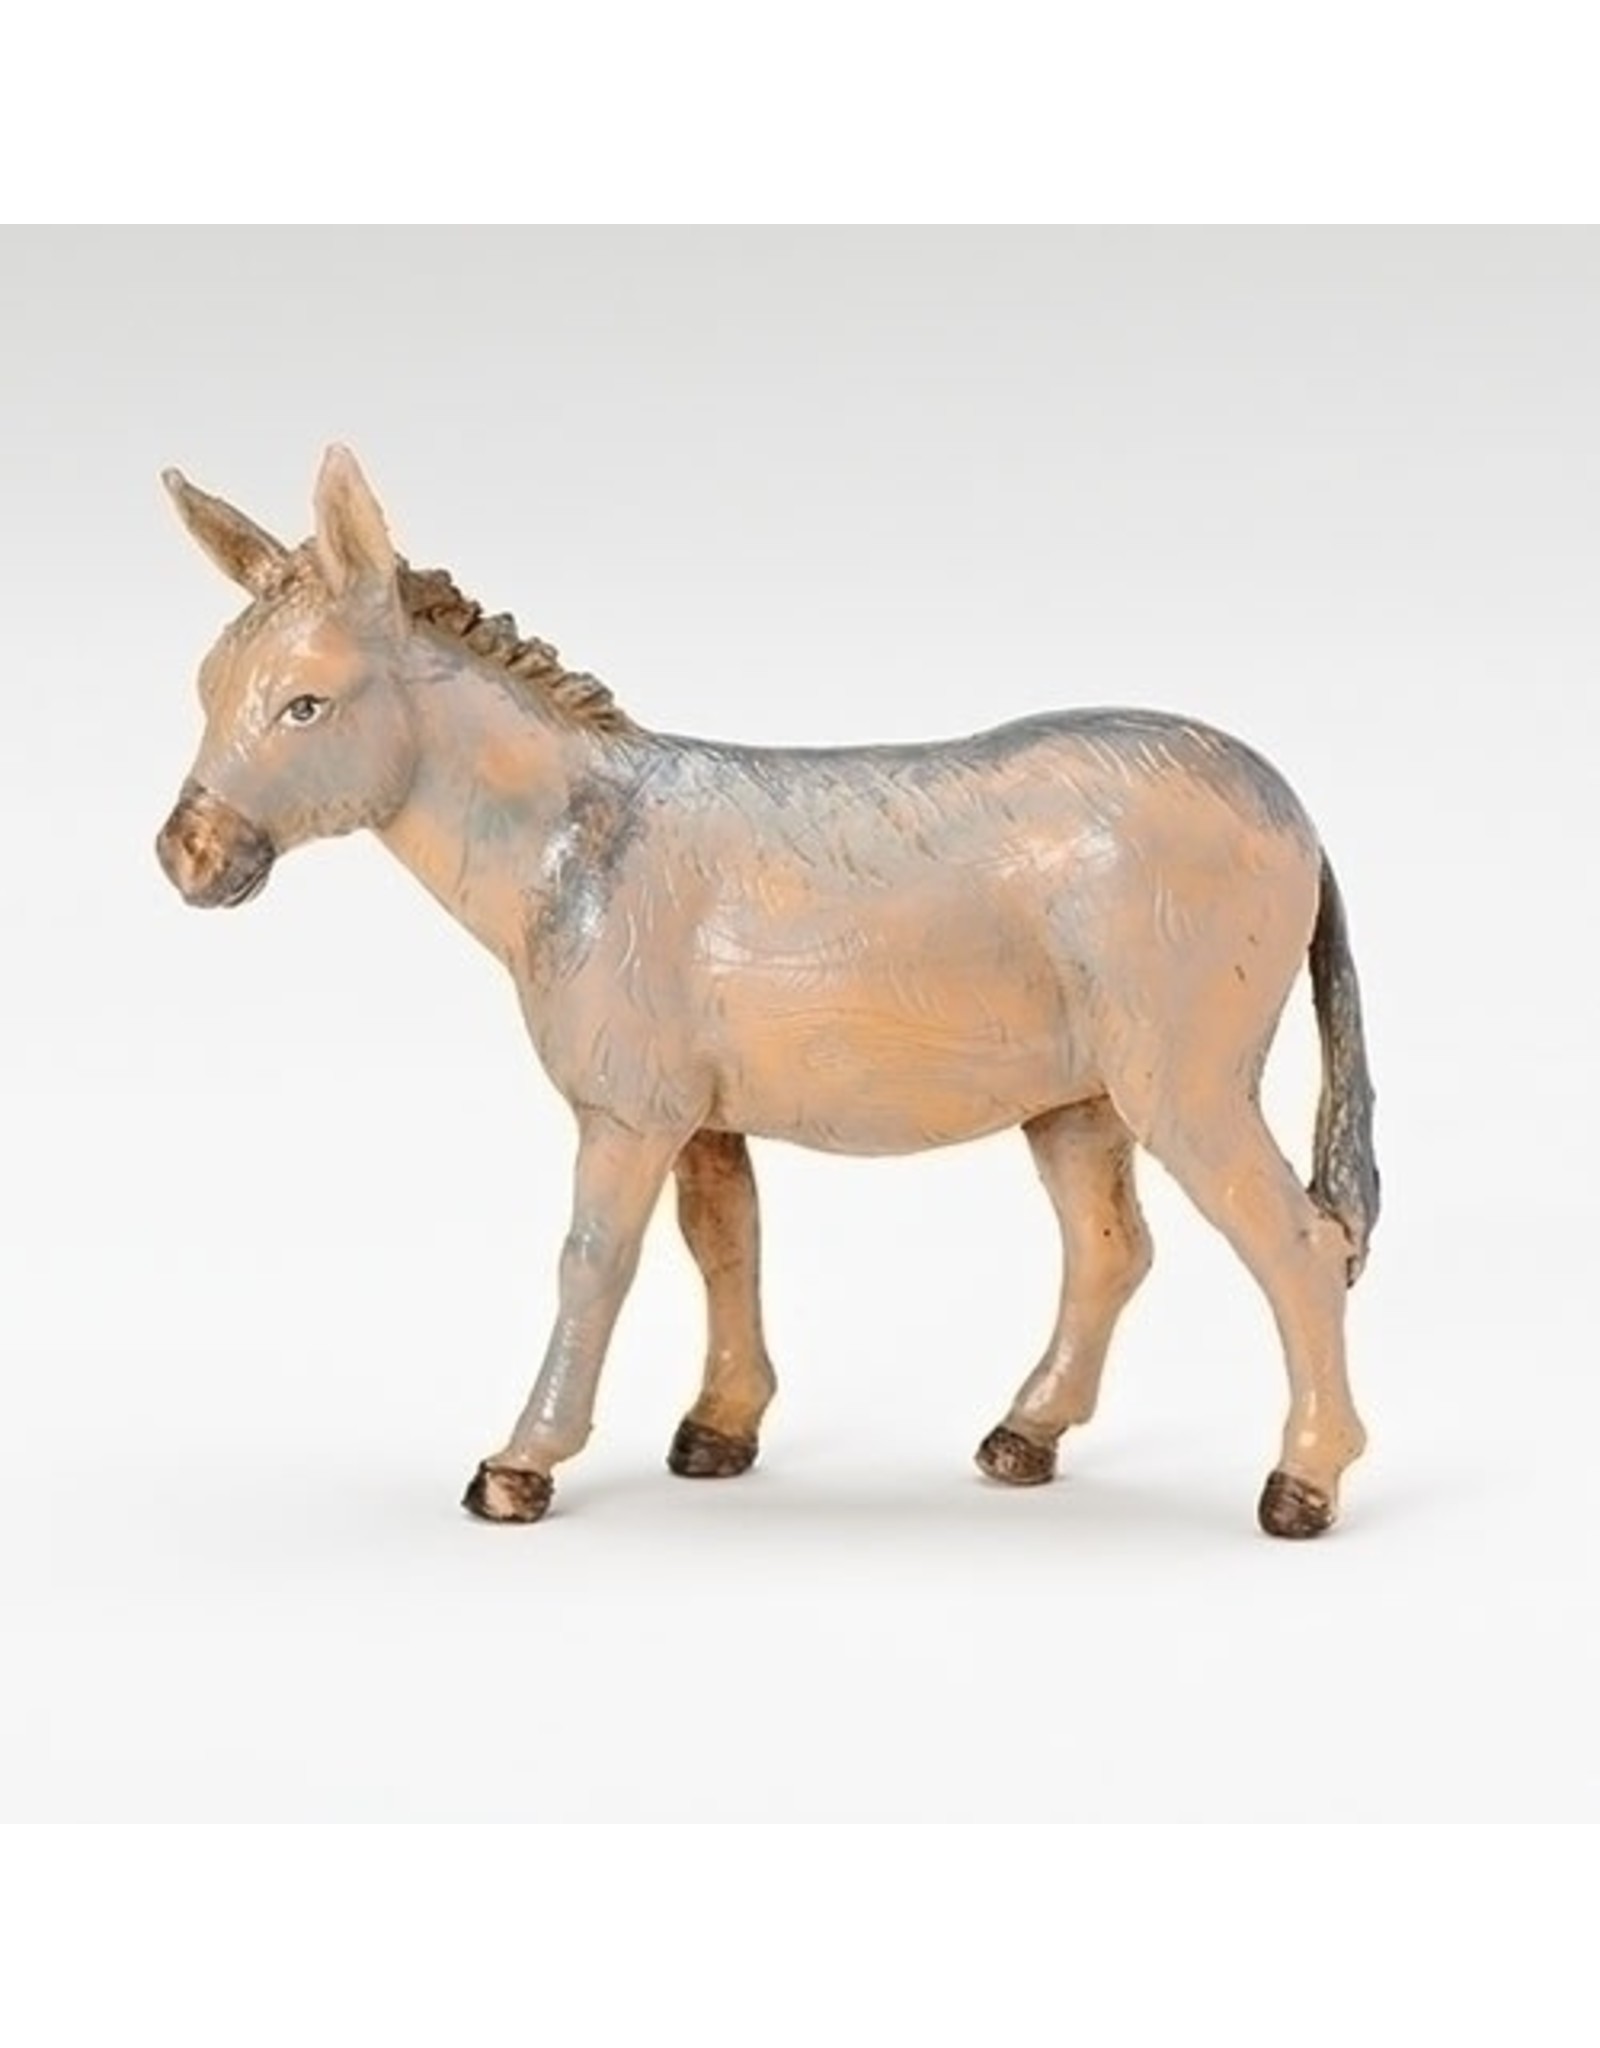 Roman Fontanini - Donkey, Standing (5" Scale)